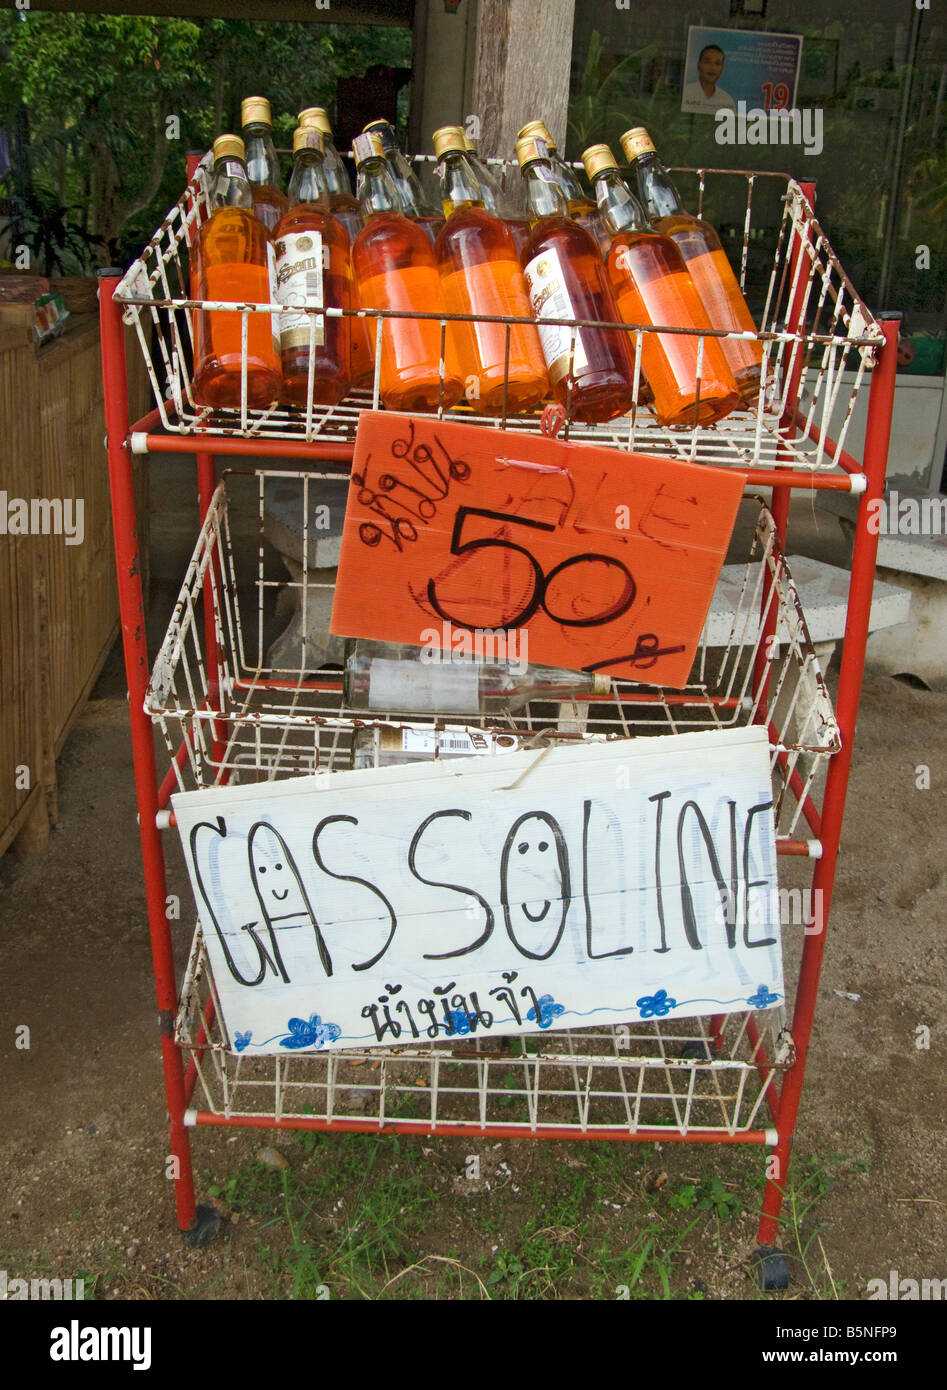 wetgeving Voorkomen ongebruikt Petrol / Gasoline for sale in old Samsong bottles, Thailand Stock Photo -  Alamy